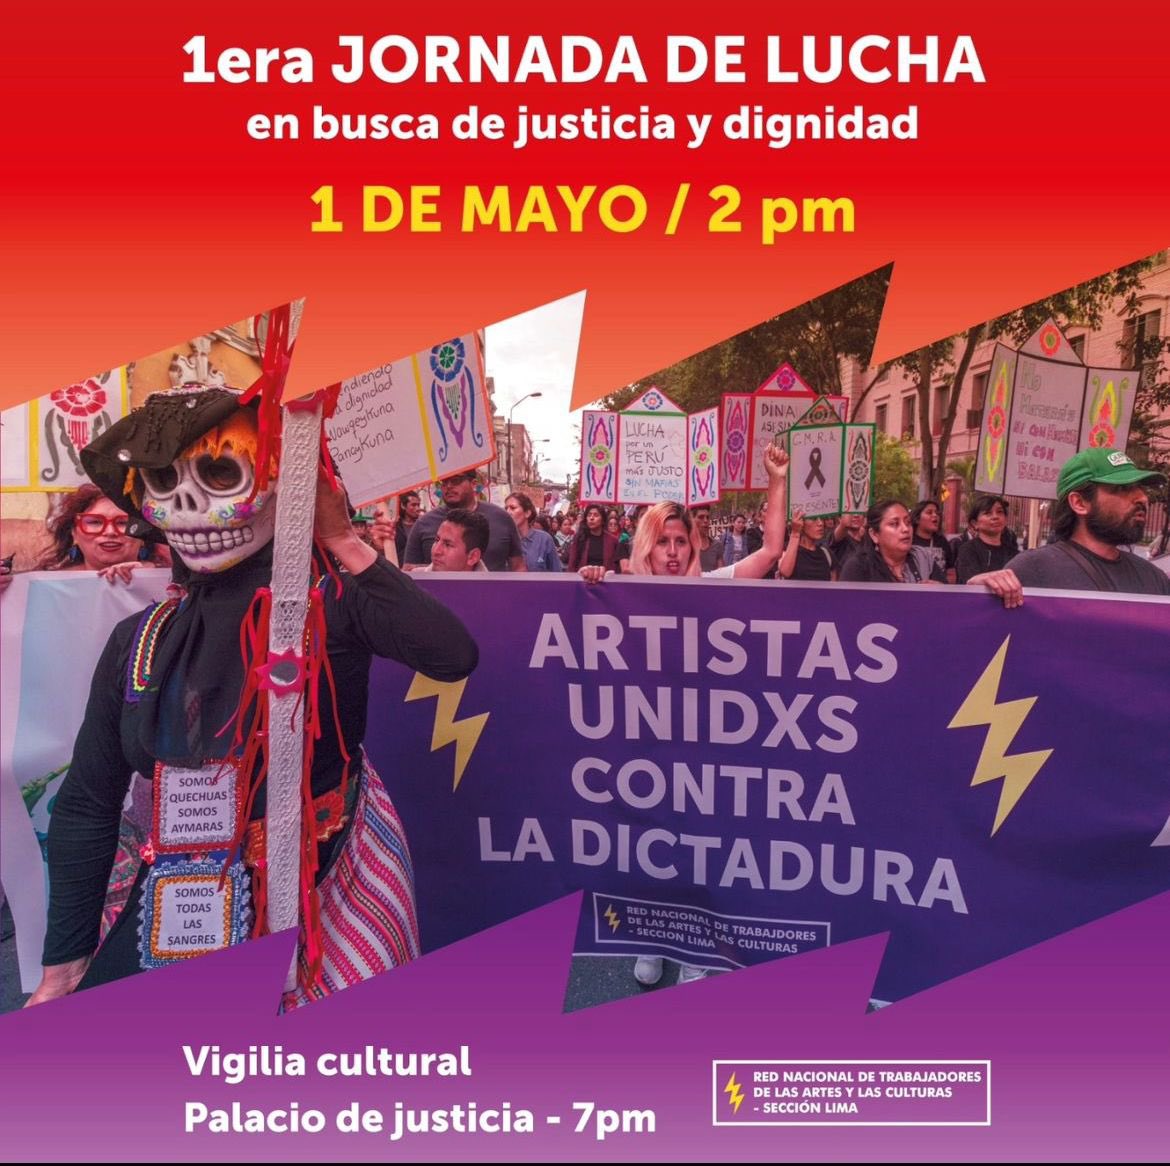 #VigiliaCultural 📣 | Mañana, 1 de mayo, nos unimos a la convocatoria de 'Artistas Unidxs contra la dictadura' para la vigilia cultural. Saldremos a las calles por justicia y dignidad. 📆 1 de Mayo 🕜 7:00 p.m 📍Palacio de Justicia ¡Acompáñanos en la lucha por justicia!